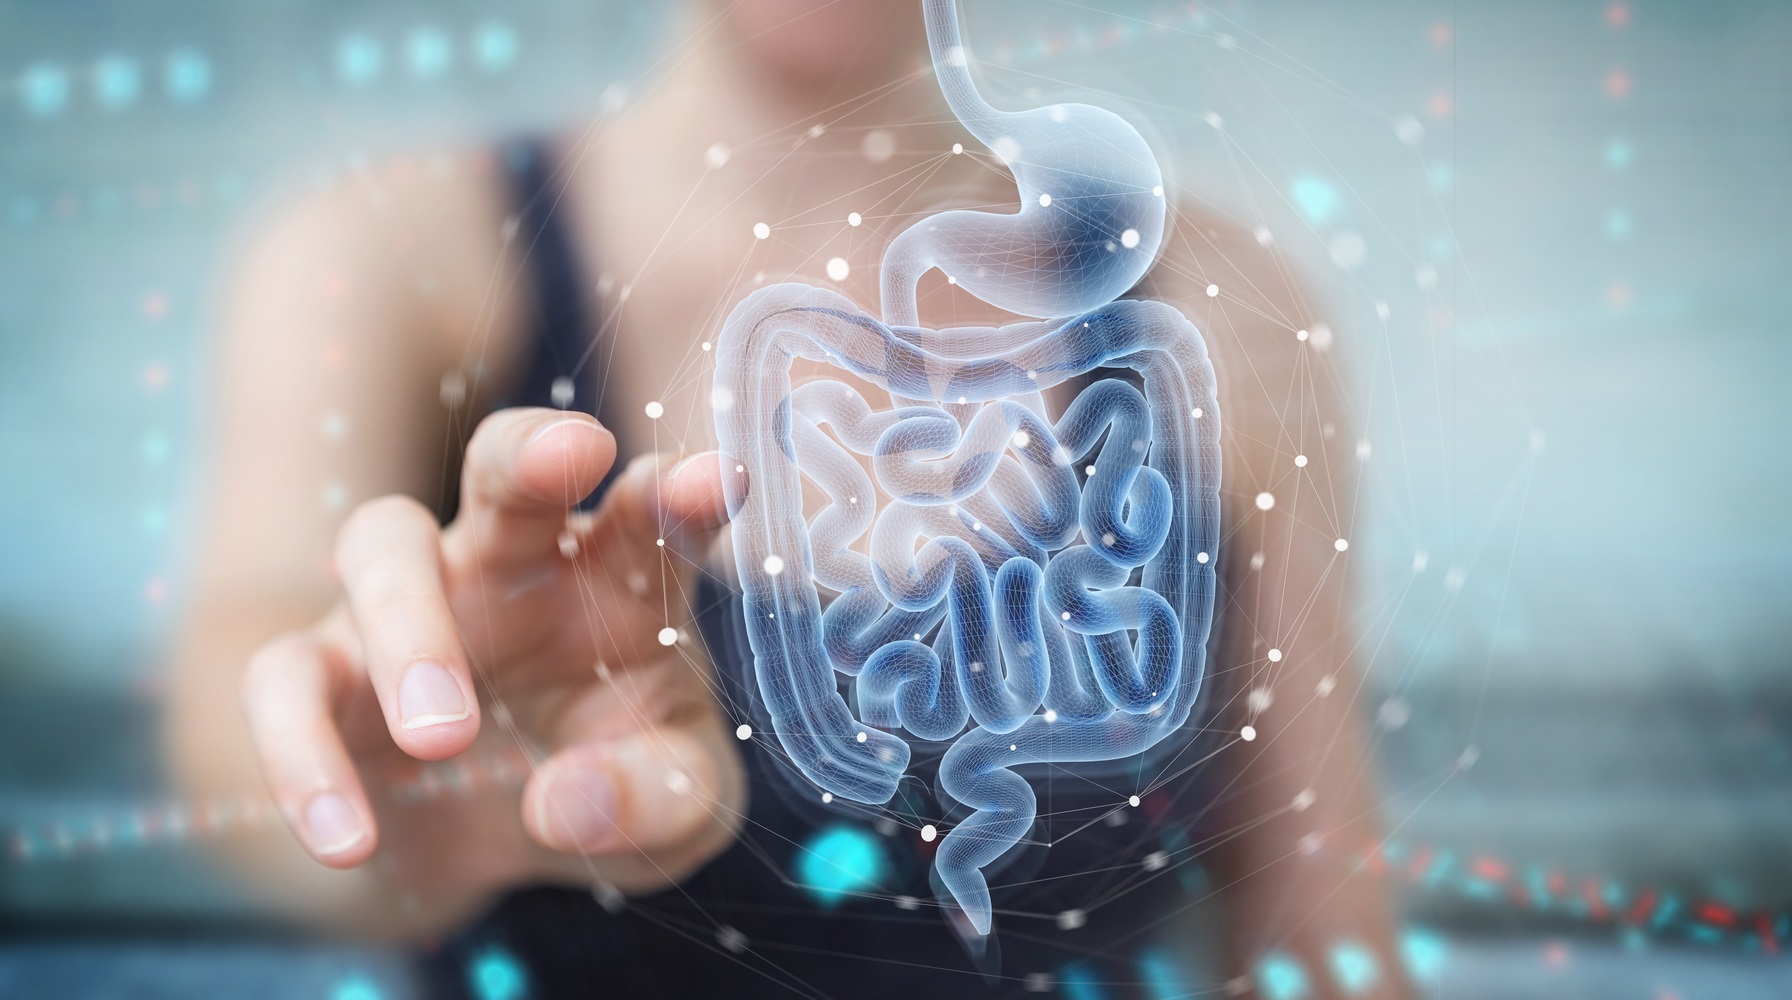 Un intestino diverso no siempre es necesariamente saludable, pero aumenta la probabilidad de tener microbios “buenos”, dijo a Healthline el doctor Vincent B. Young, profesor del Departamento de Microbiología e Inmunología de la Universidad Estatal de Michigan